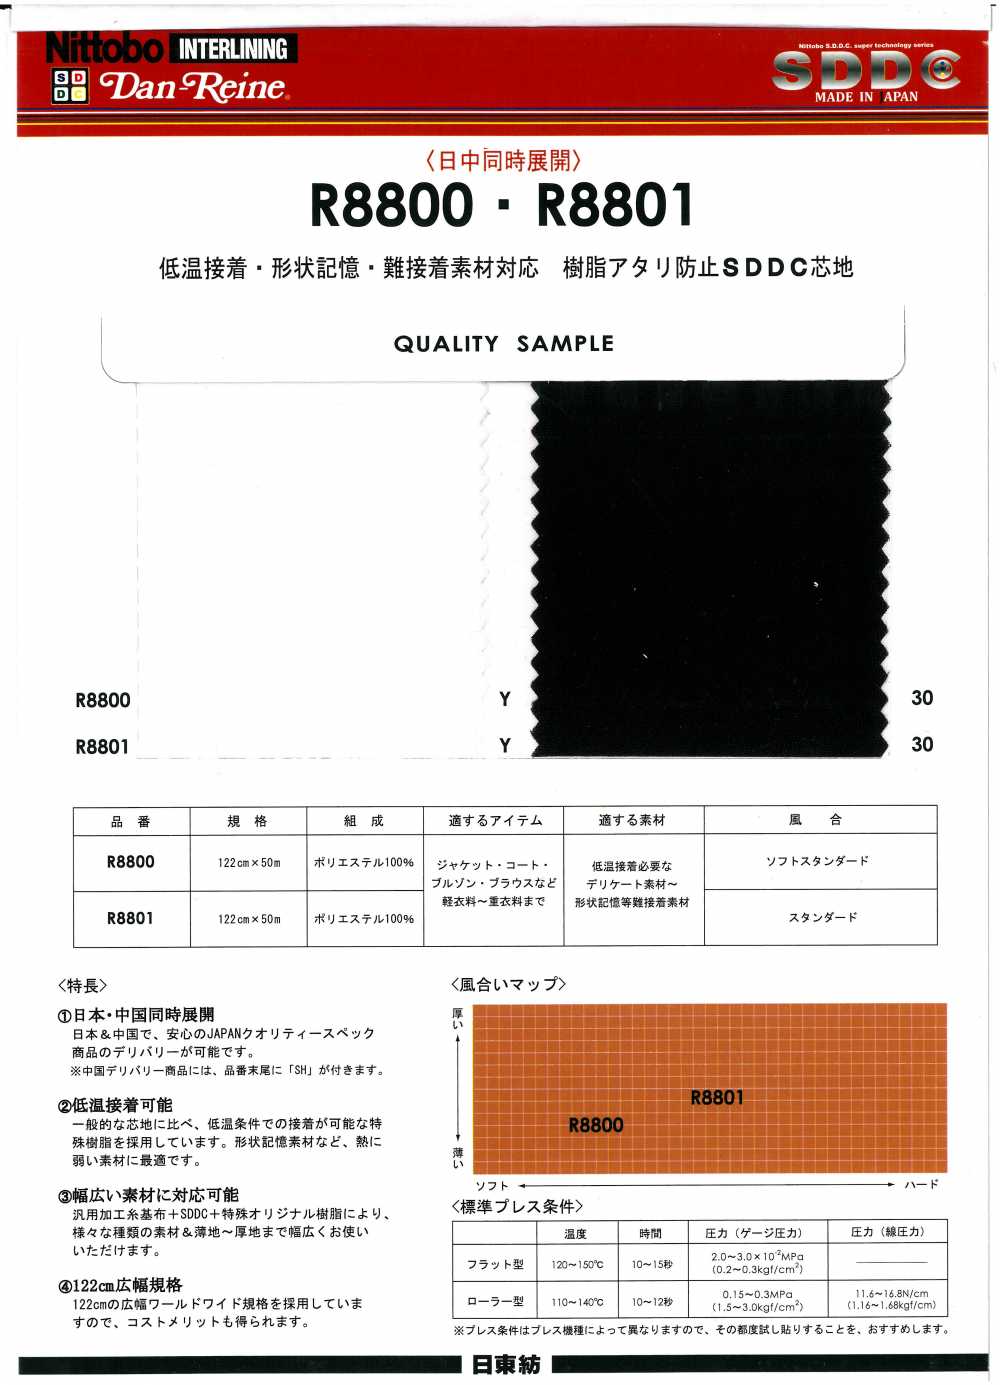 R8801 저온 접착 형상 기억 · 난 접착 소재 대응 수지 아타리 방지 SDDC 심지 닛토보 (닛토보인터라이닝)